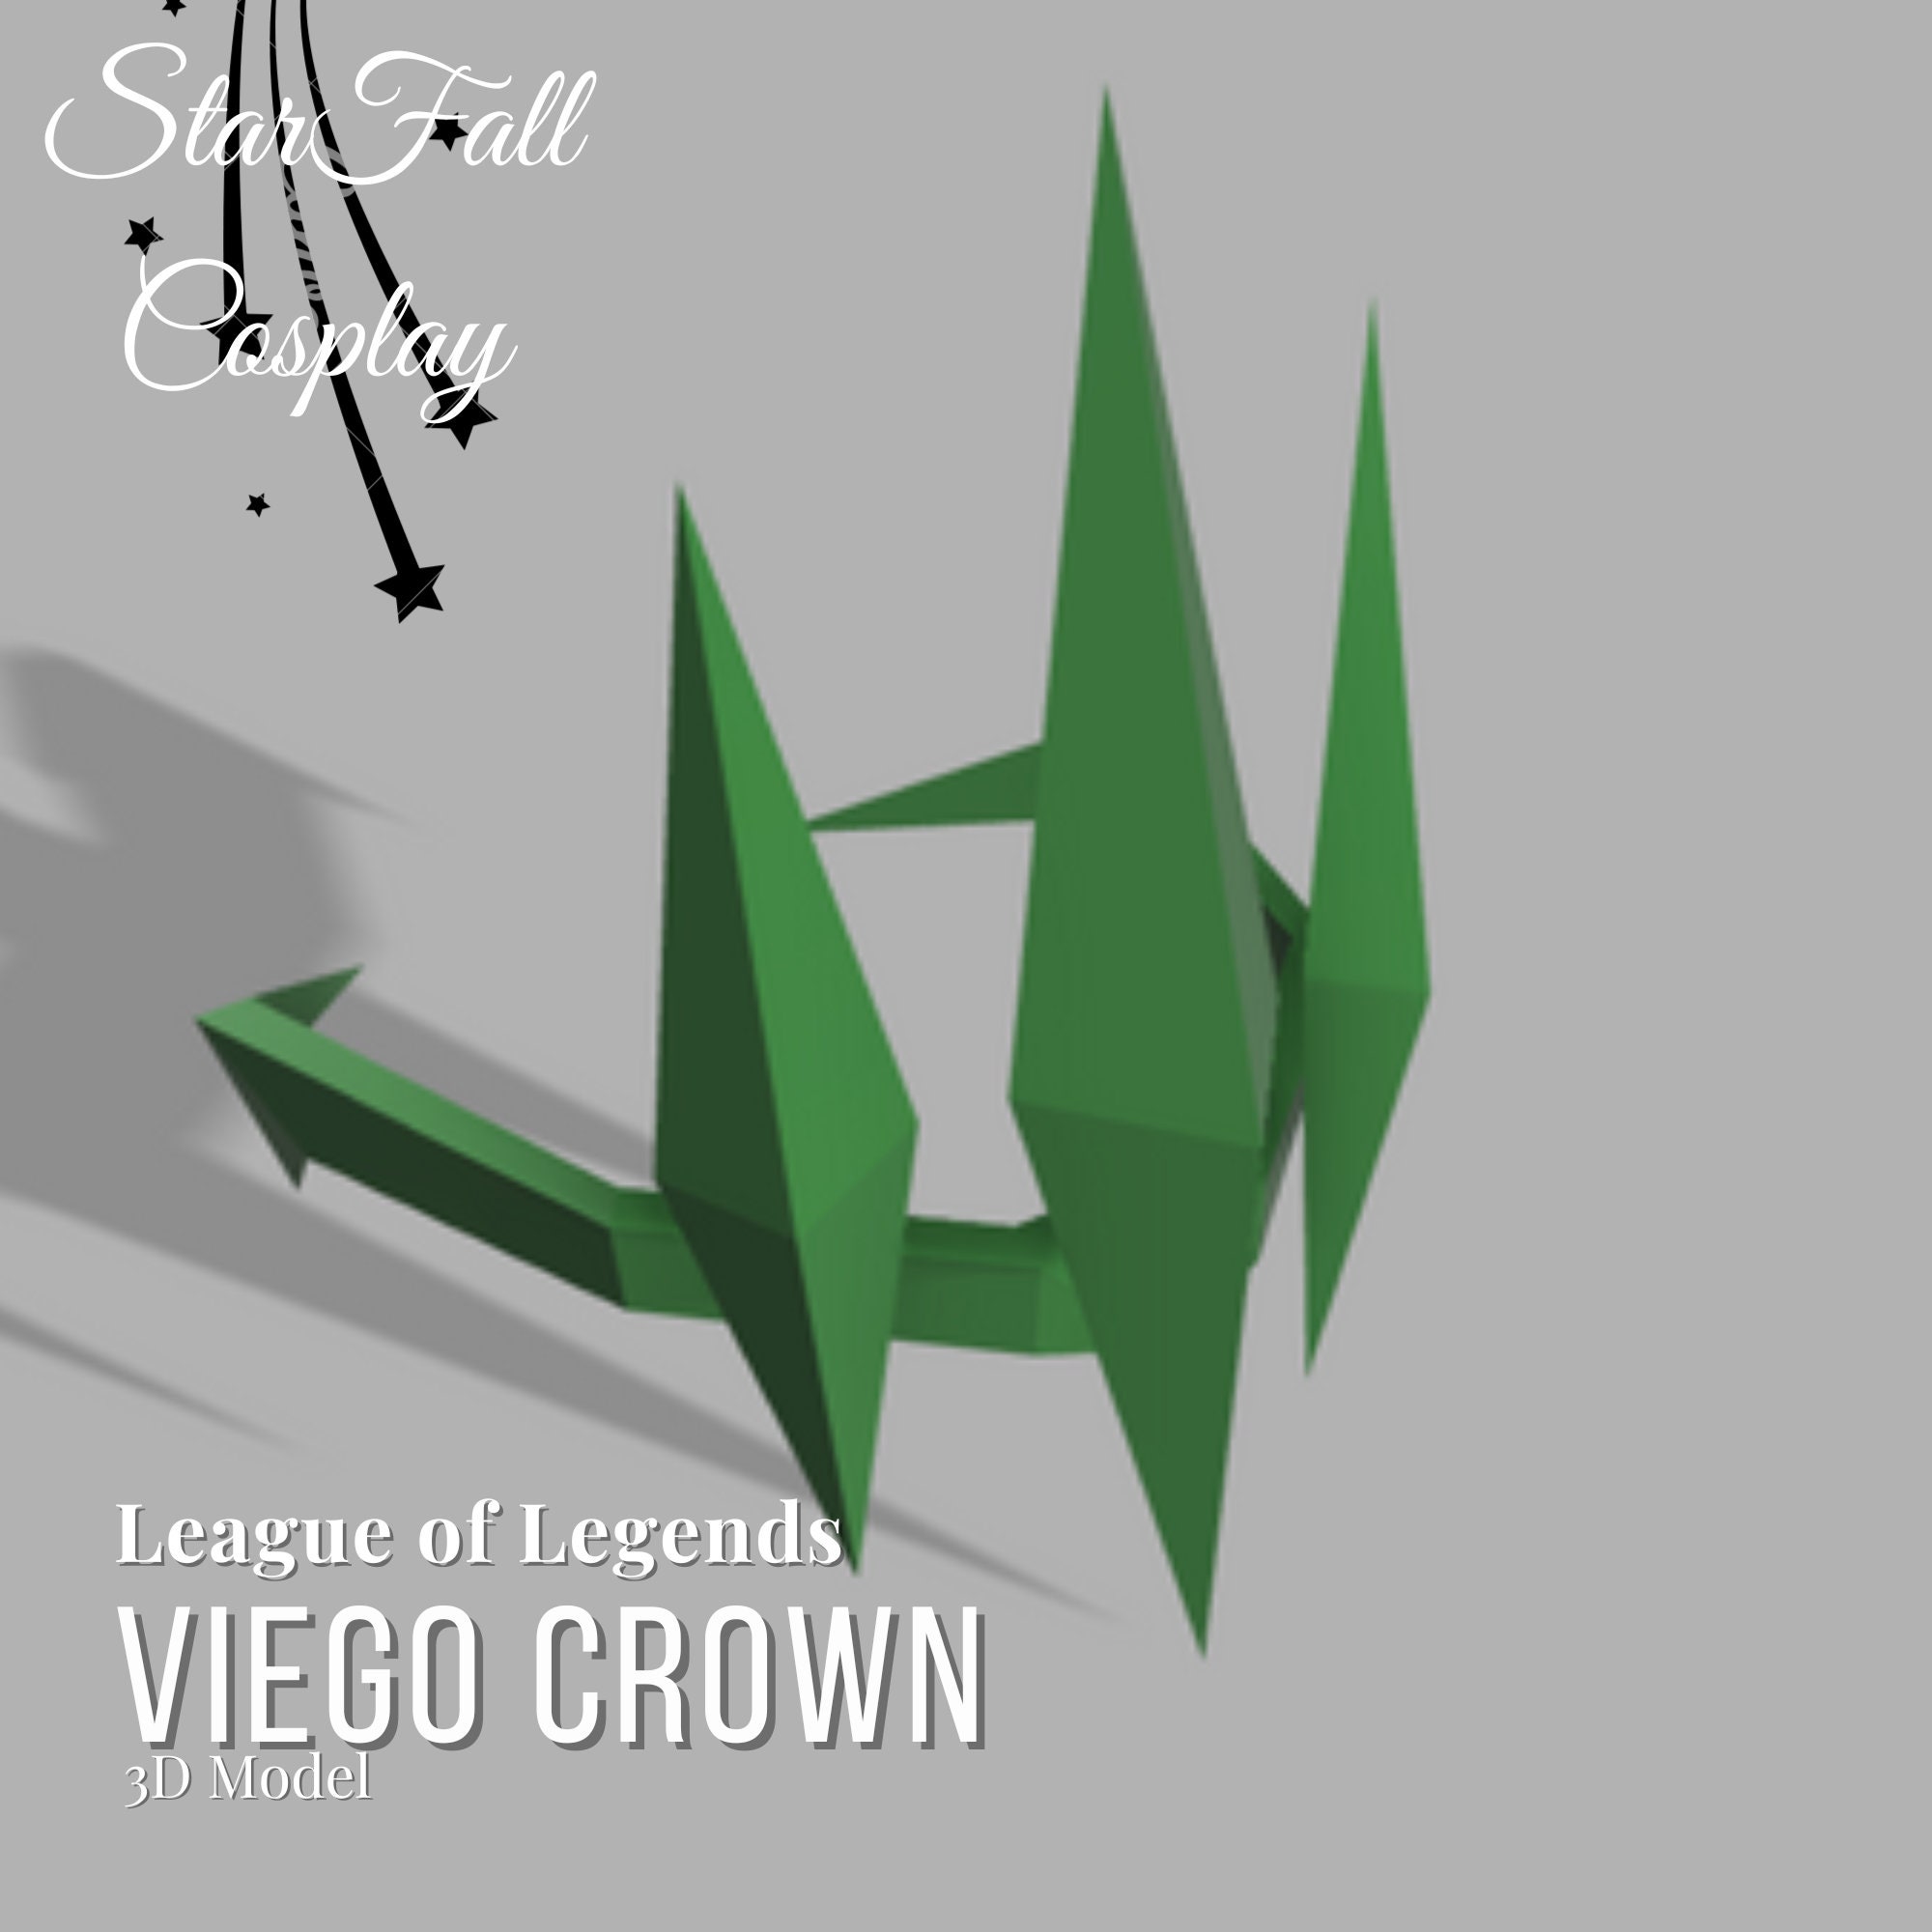 Viego crown